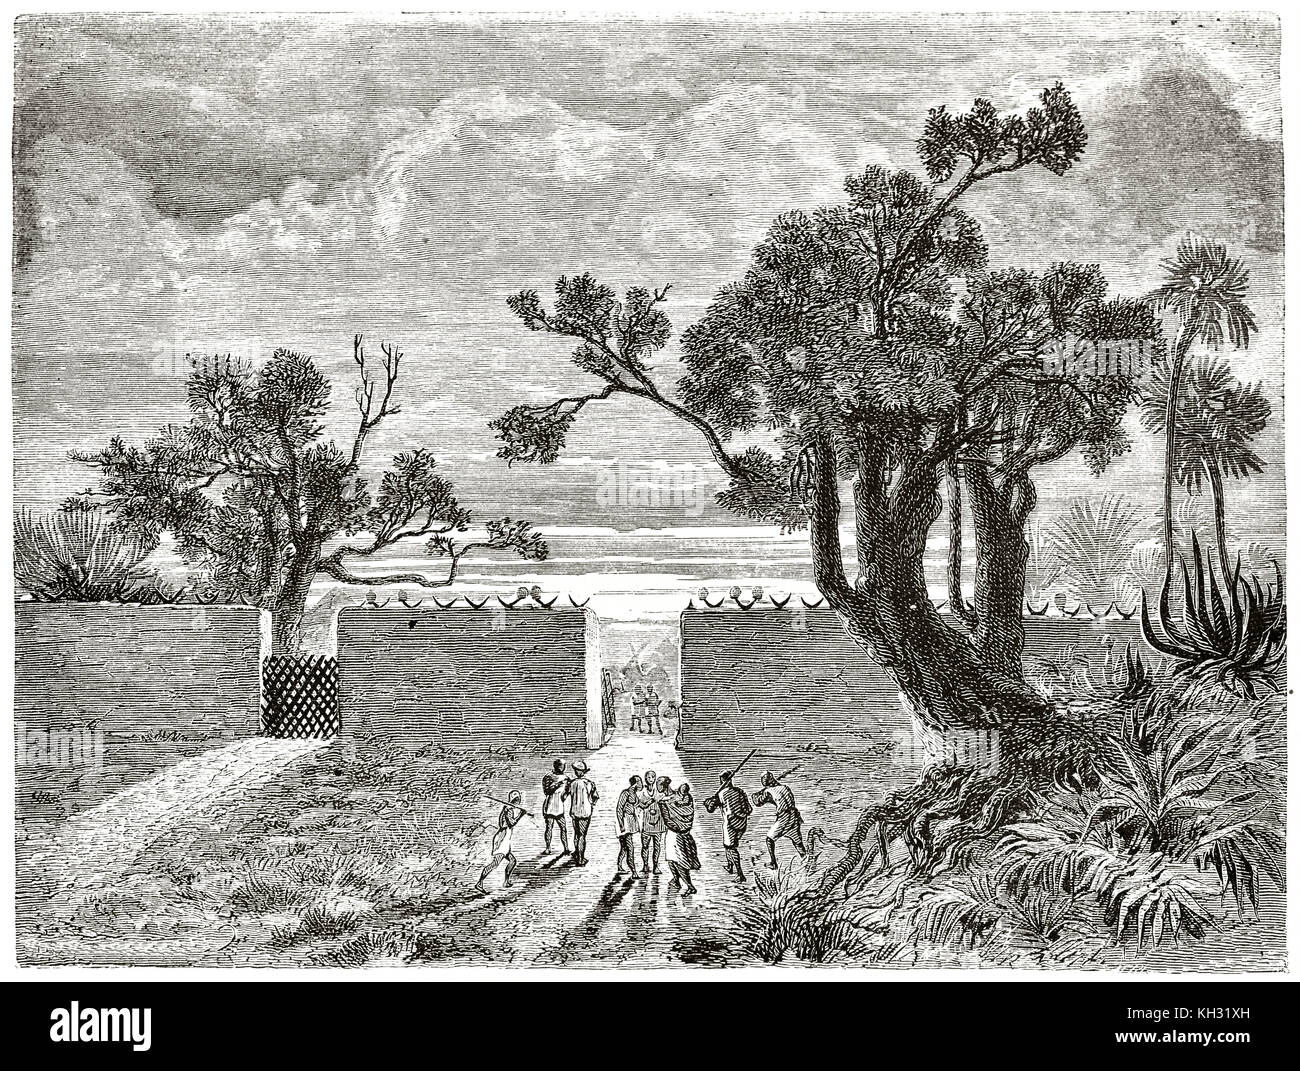 Alte Ansicht von Abomey Tor, Benin. Durch Foulquier, Publ. Bei le Tour du Monde, Paris, 1863 Stockfoto